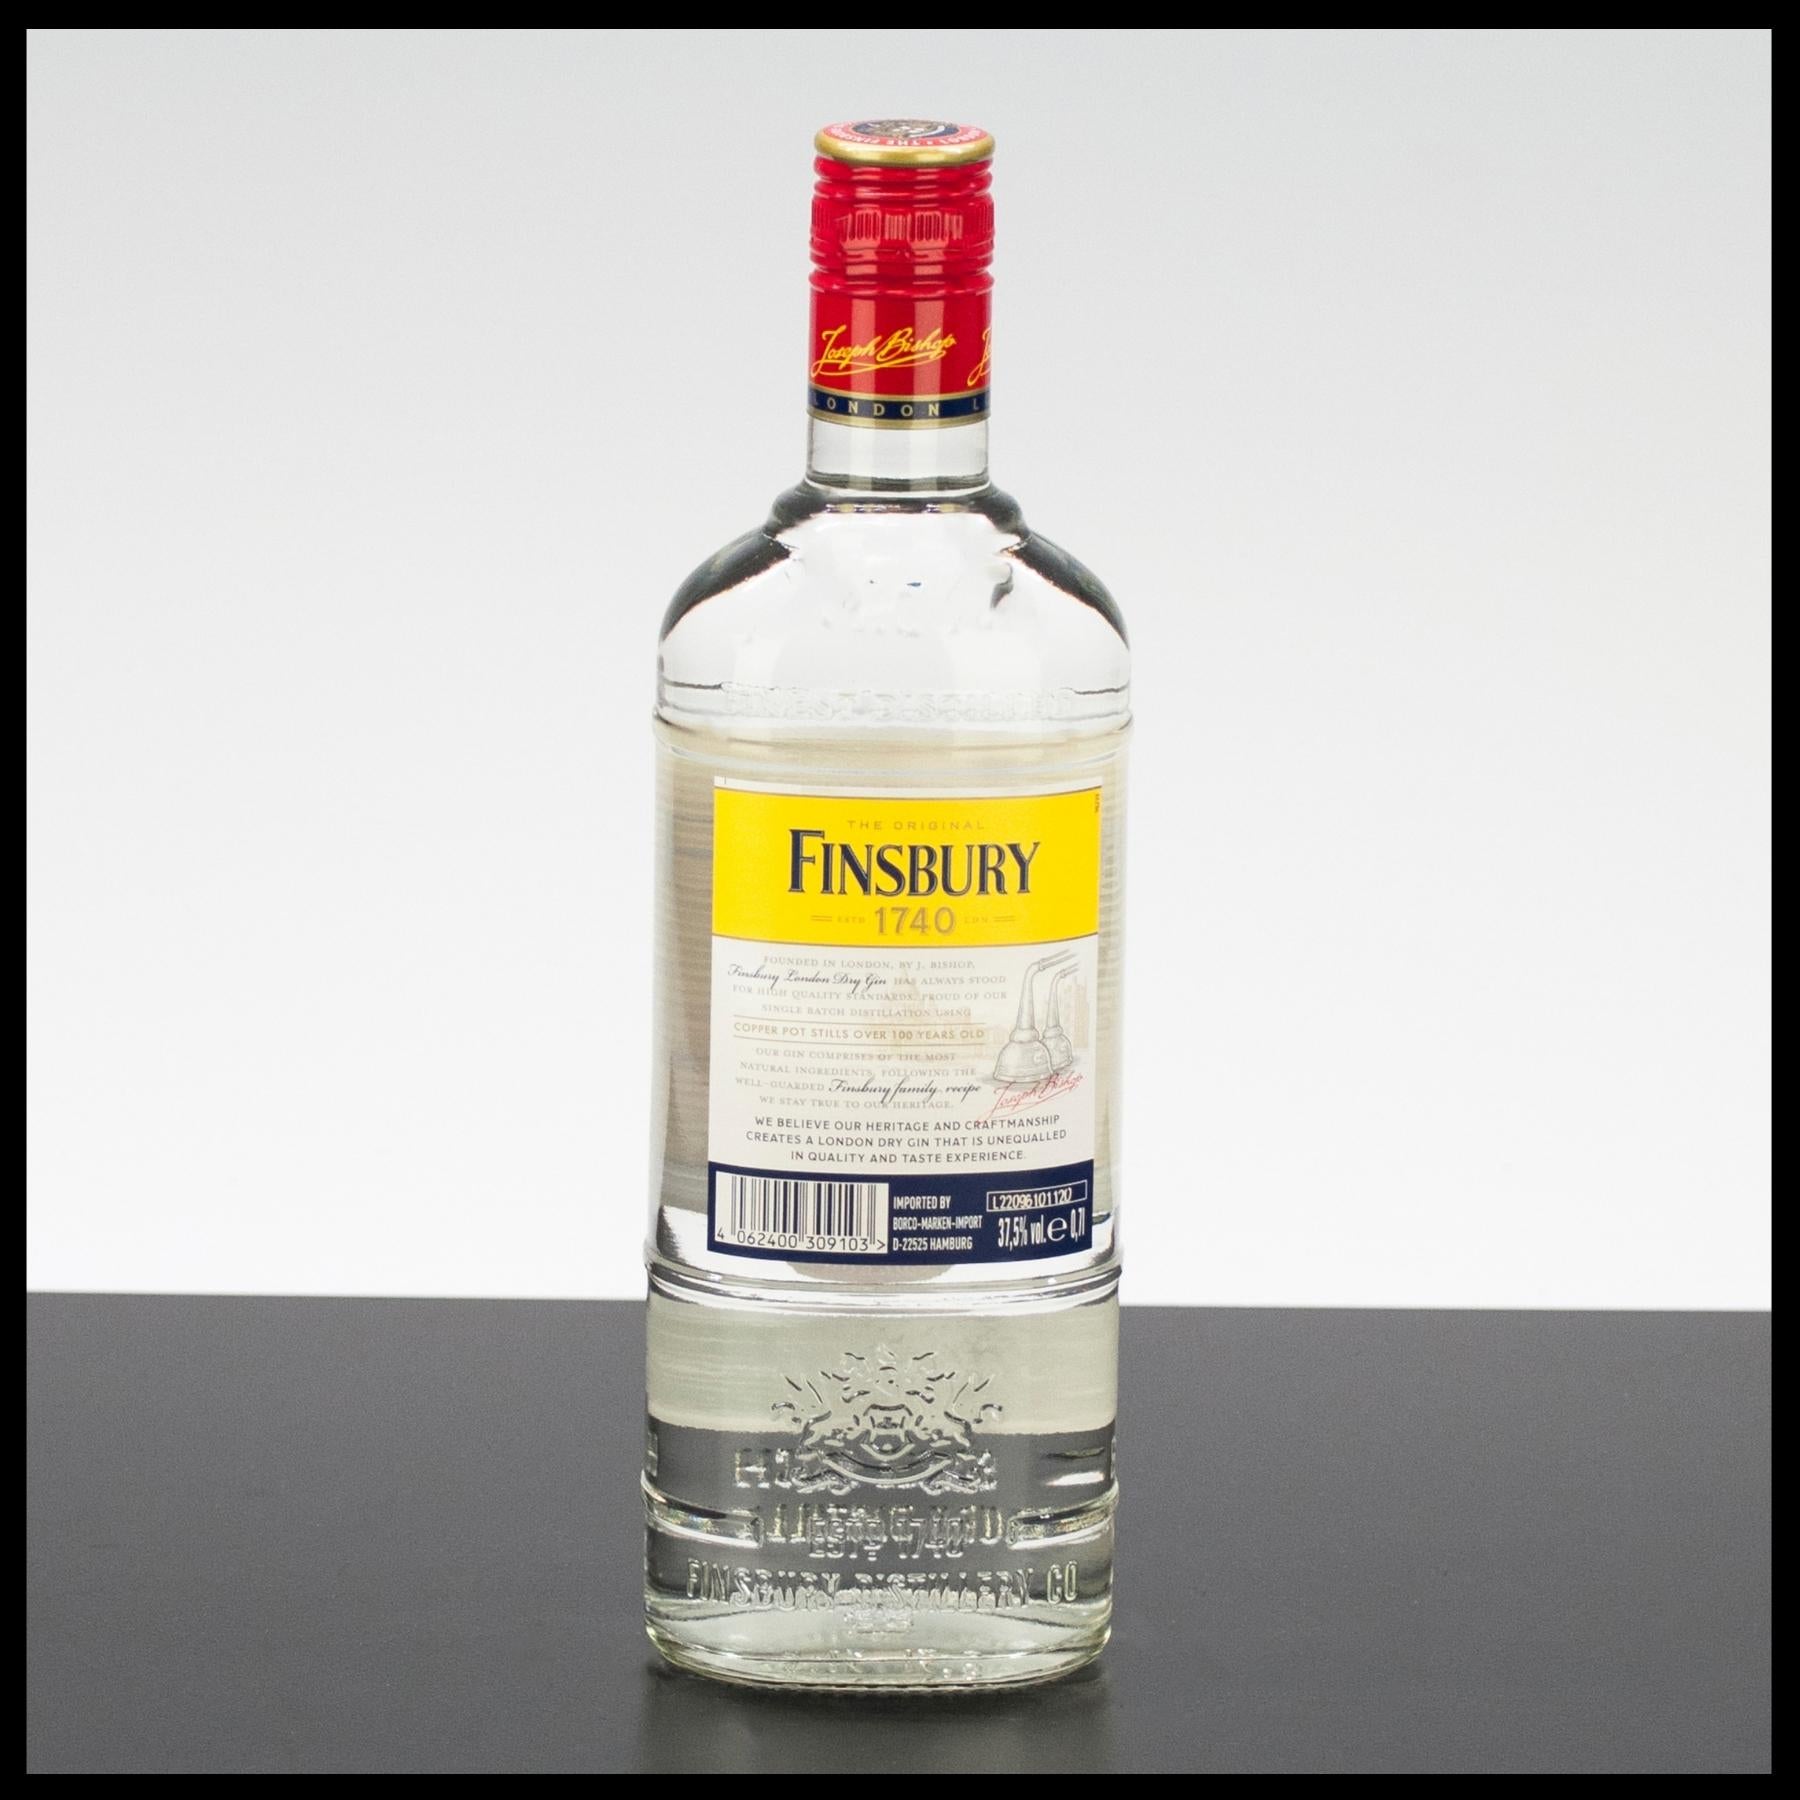 Finsbury London Dry Gin 0,7L - 47% Vol. - Trinklusiv